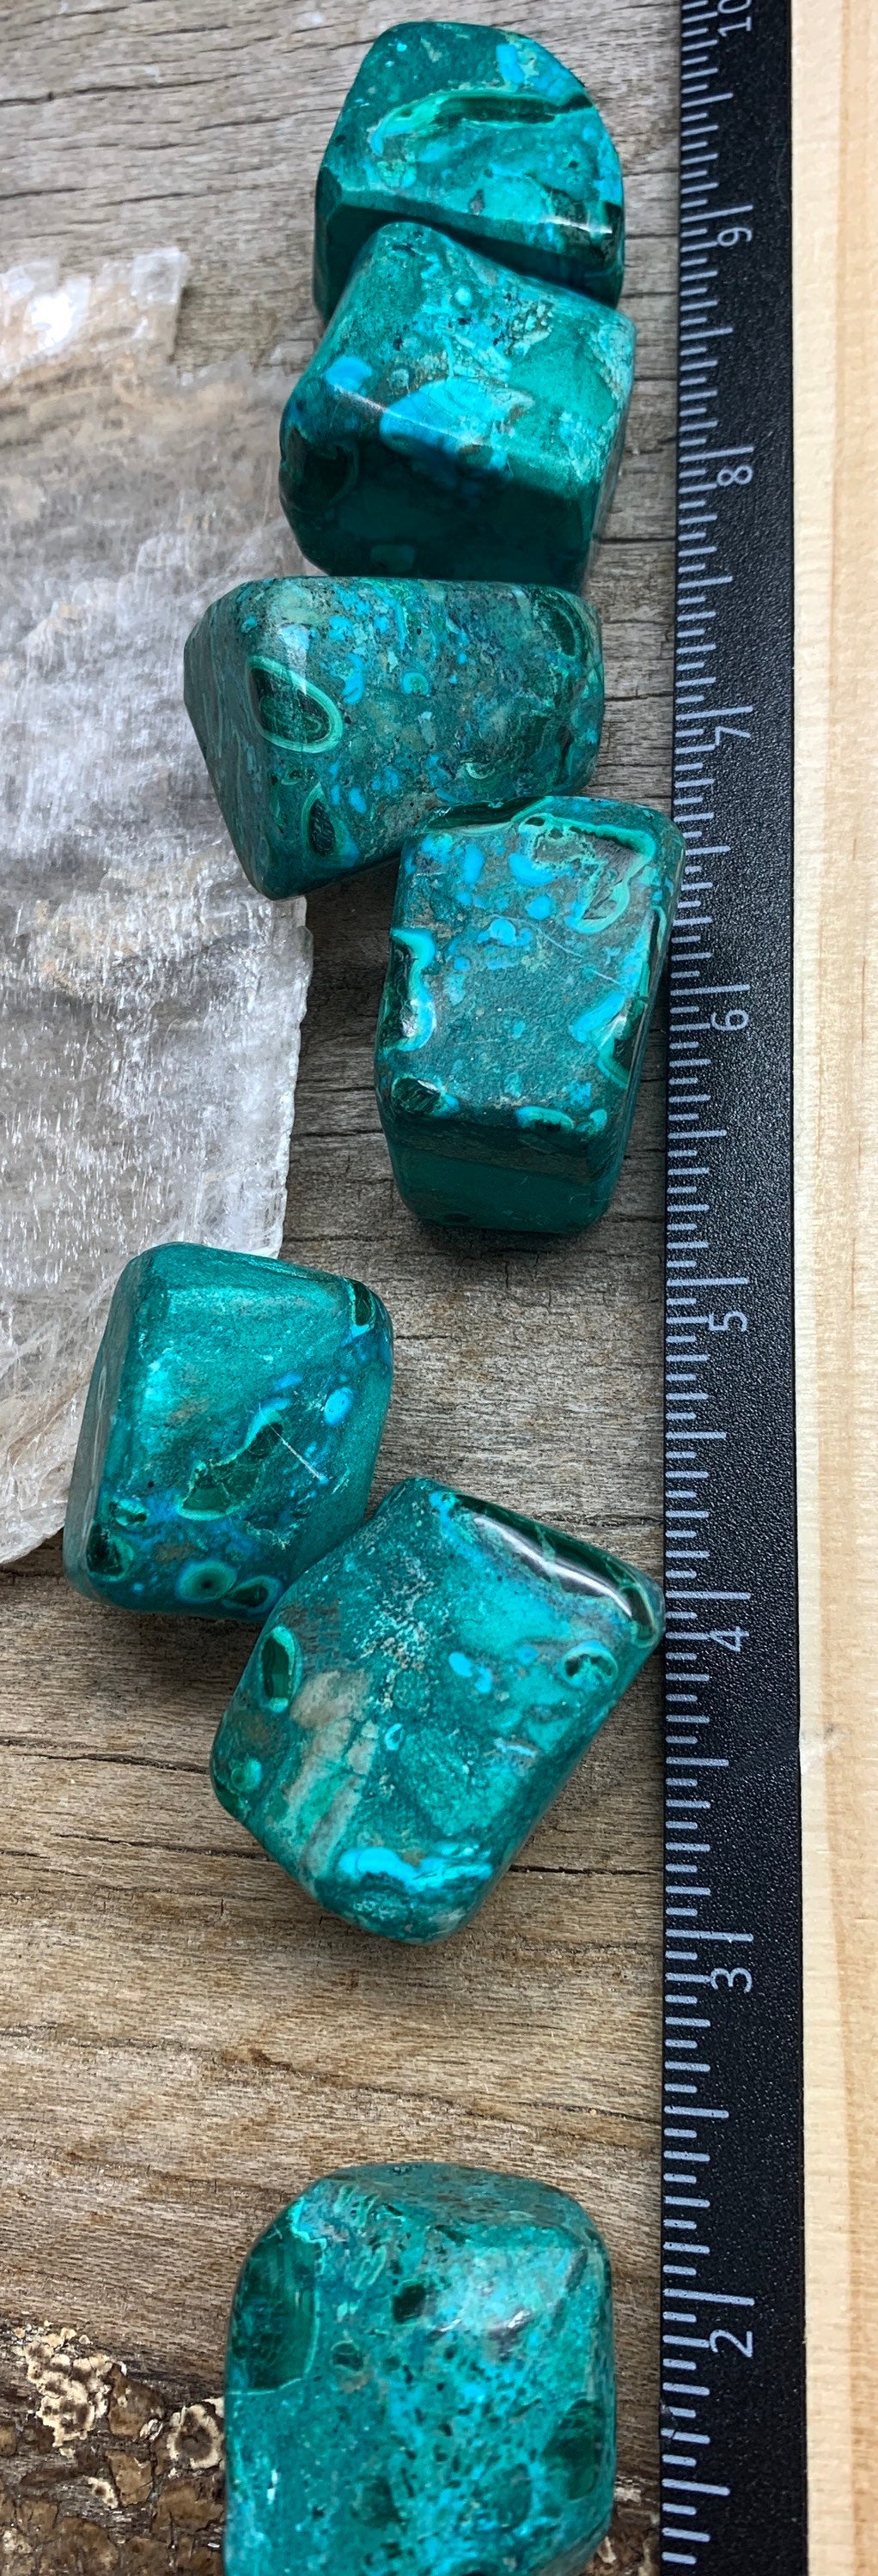 Chrysocolla Large Tumbled Stone 0622 (1”- 1 3/4”)